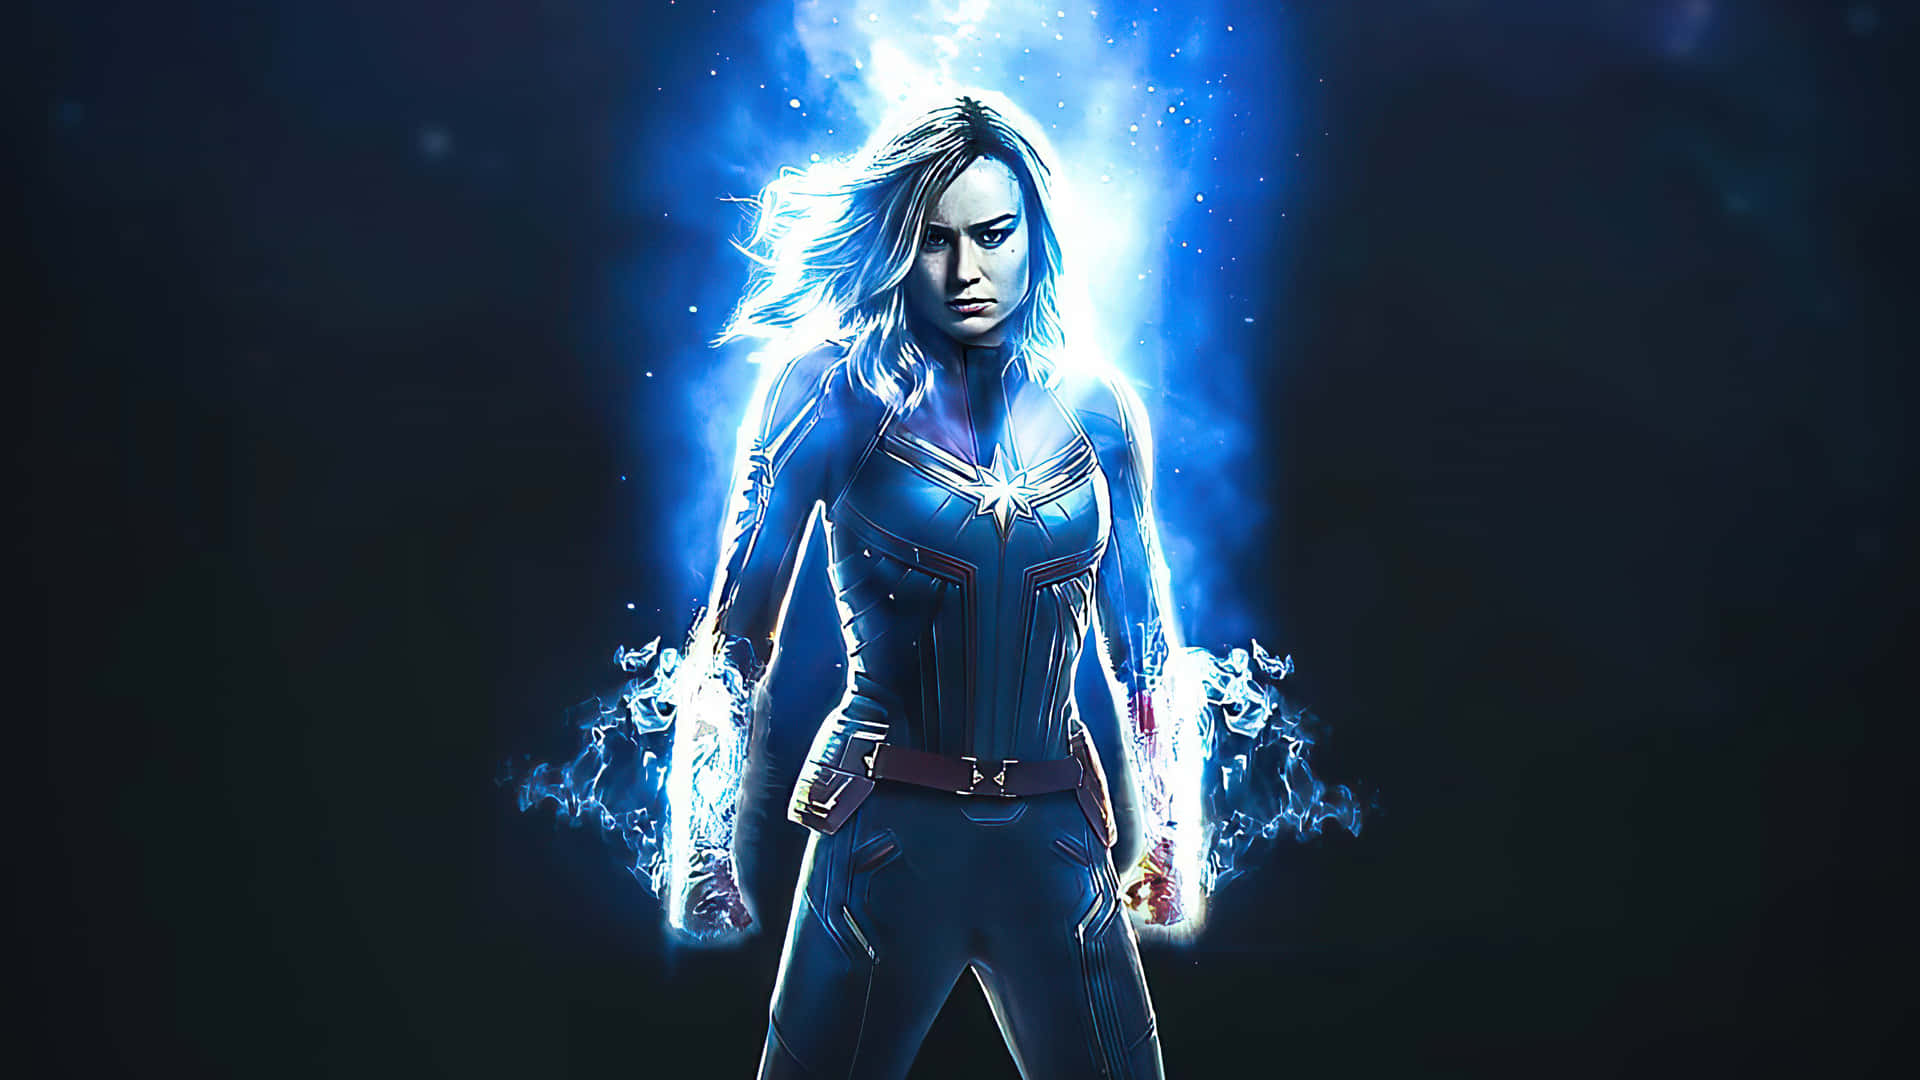 Brielarson Come Captain Marvel In Un'immagine 3d Con Un'estetica Oscura Di Colore Blu. Sfondo